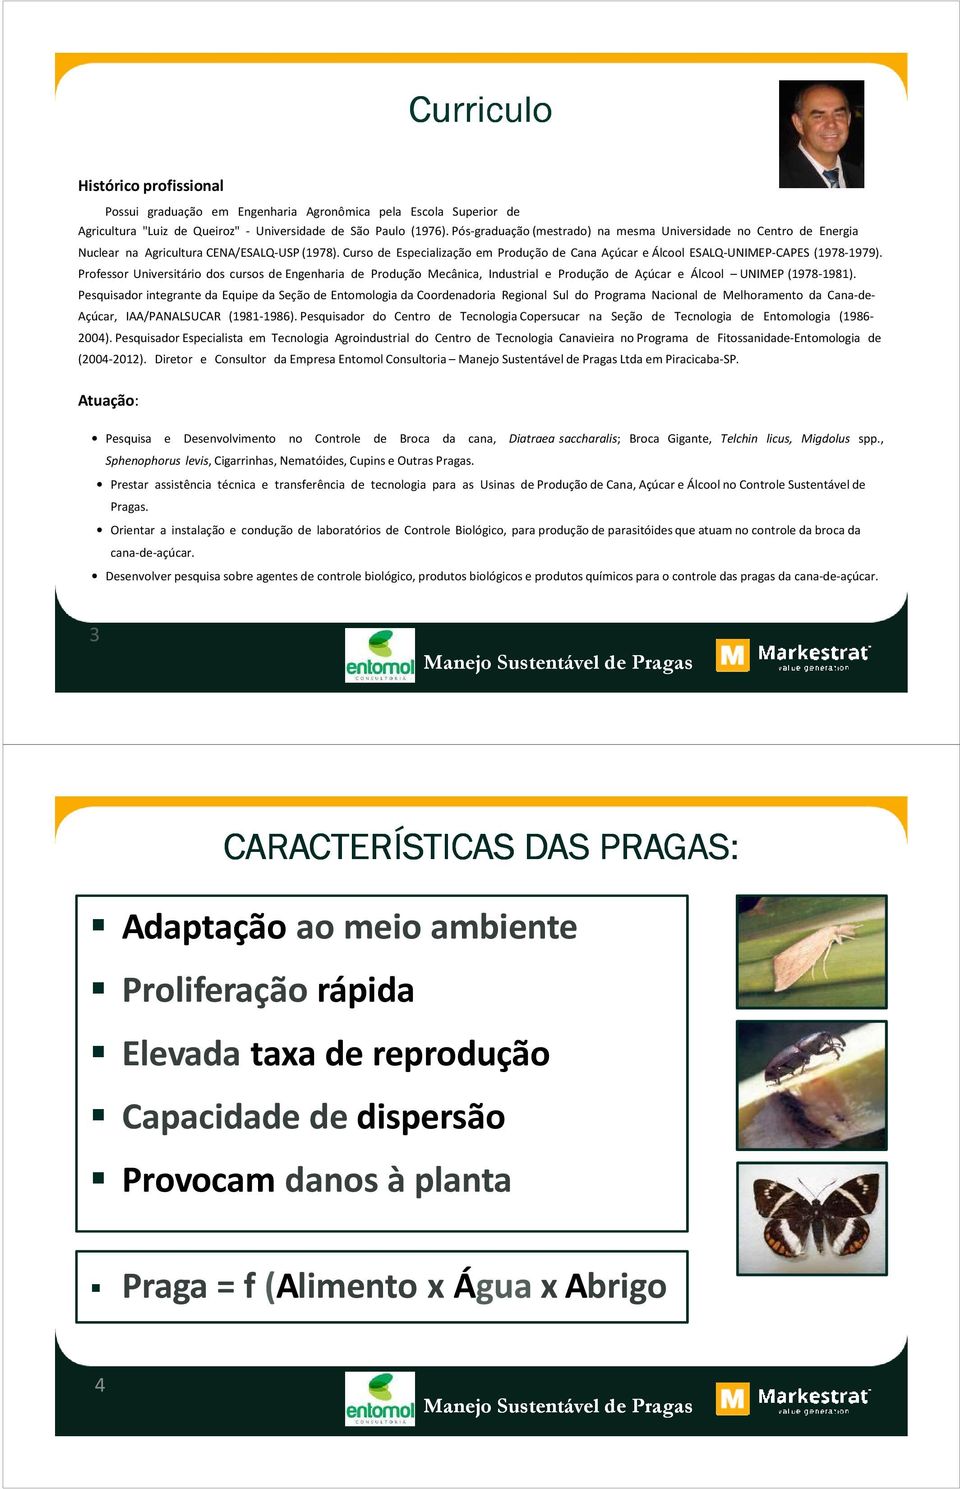 Curso de Especialização em Produção de Cana Açúcar e Álcool ESALQ-UNIMEP-CAPES (1978-1979).